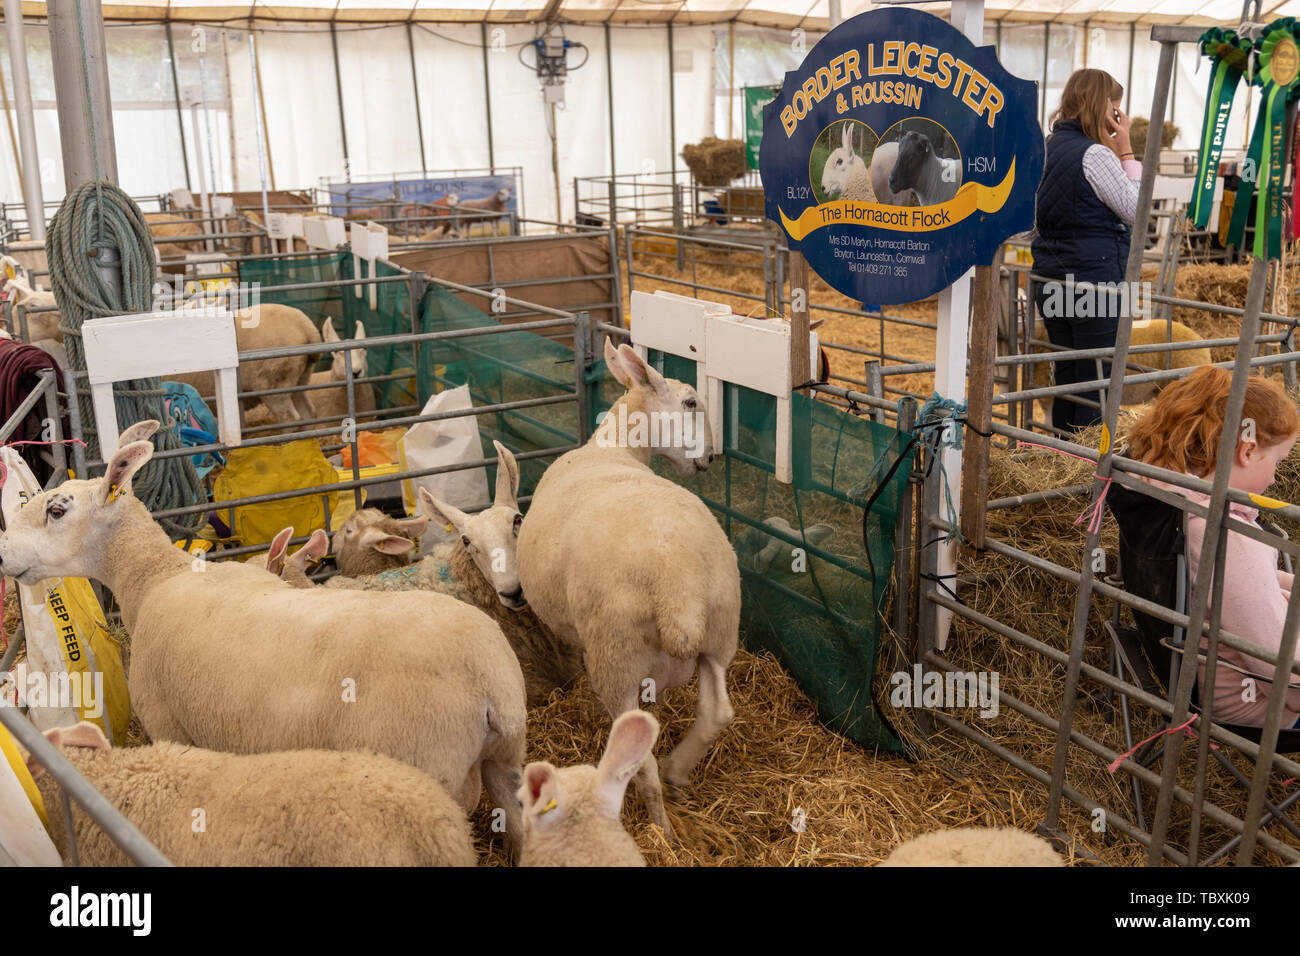 Galardonada y Border Leicester Roussin ovejas del rebaño Hornacott en el Devon County Mostrar Foto de stock